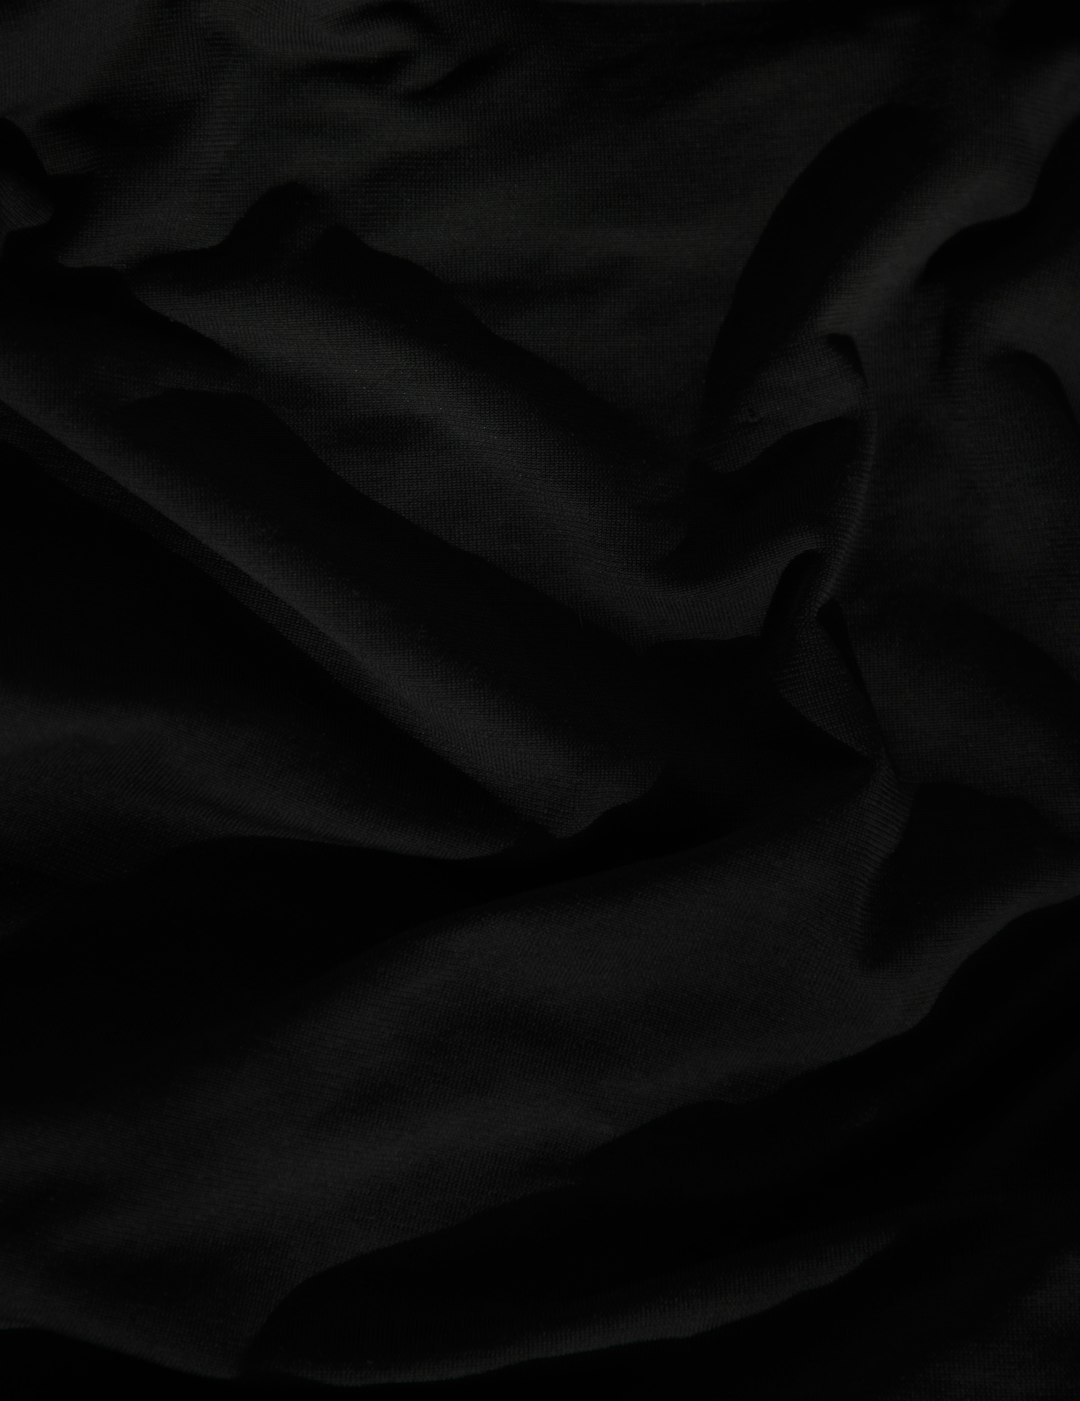 black textile on white textile